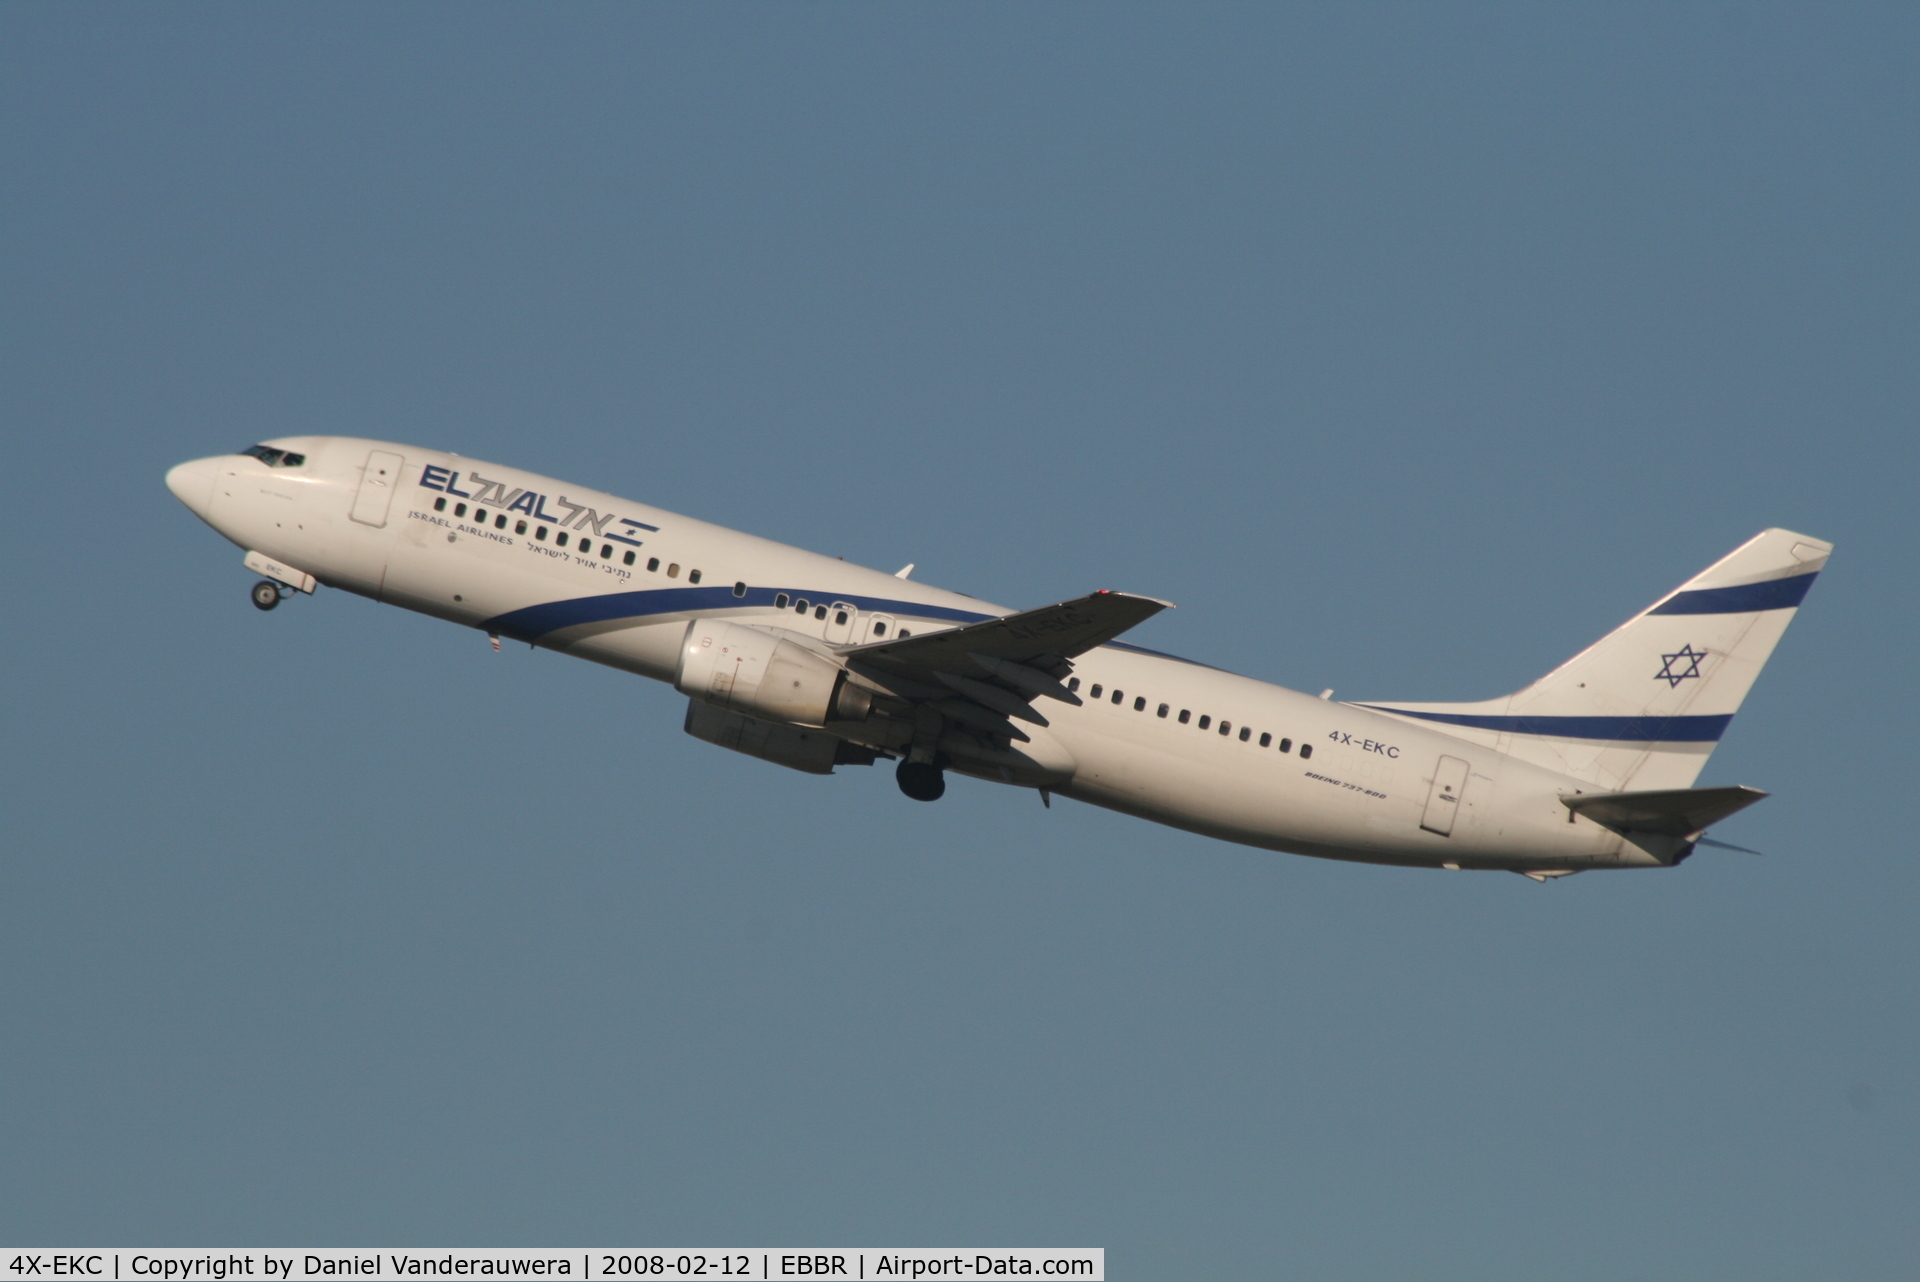 4X-EKC, 1999 Boeing 737-858 C/N 29959, departing of flight LY334 to Tel-Aviv